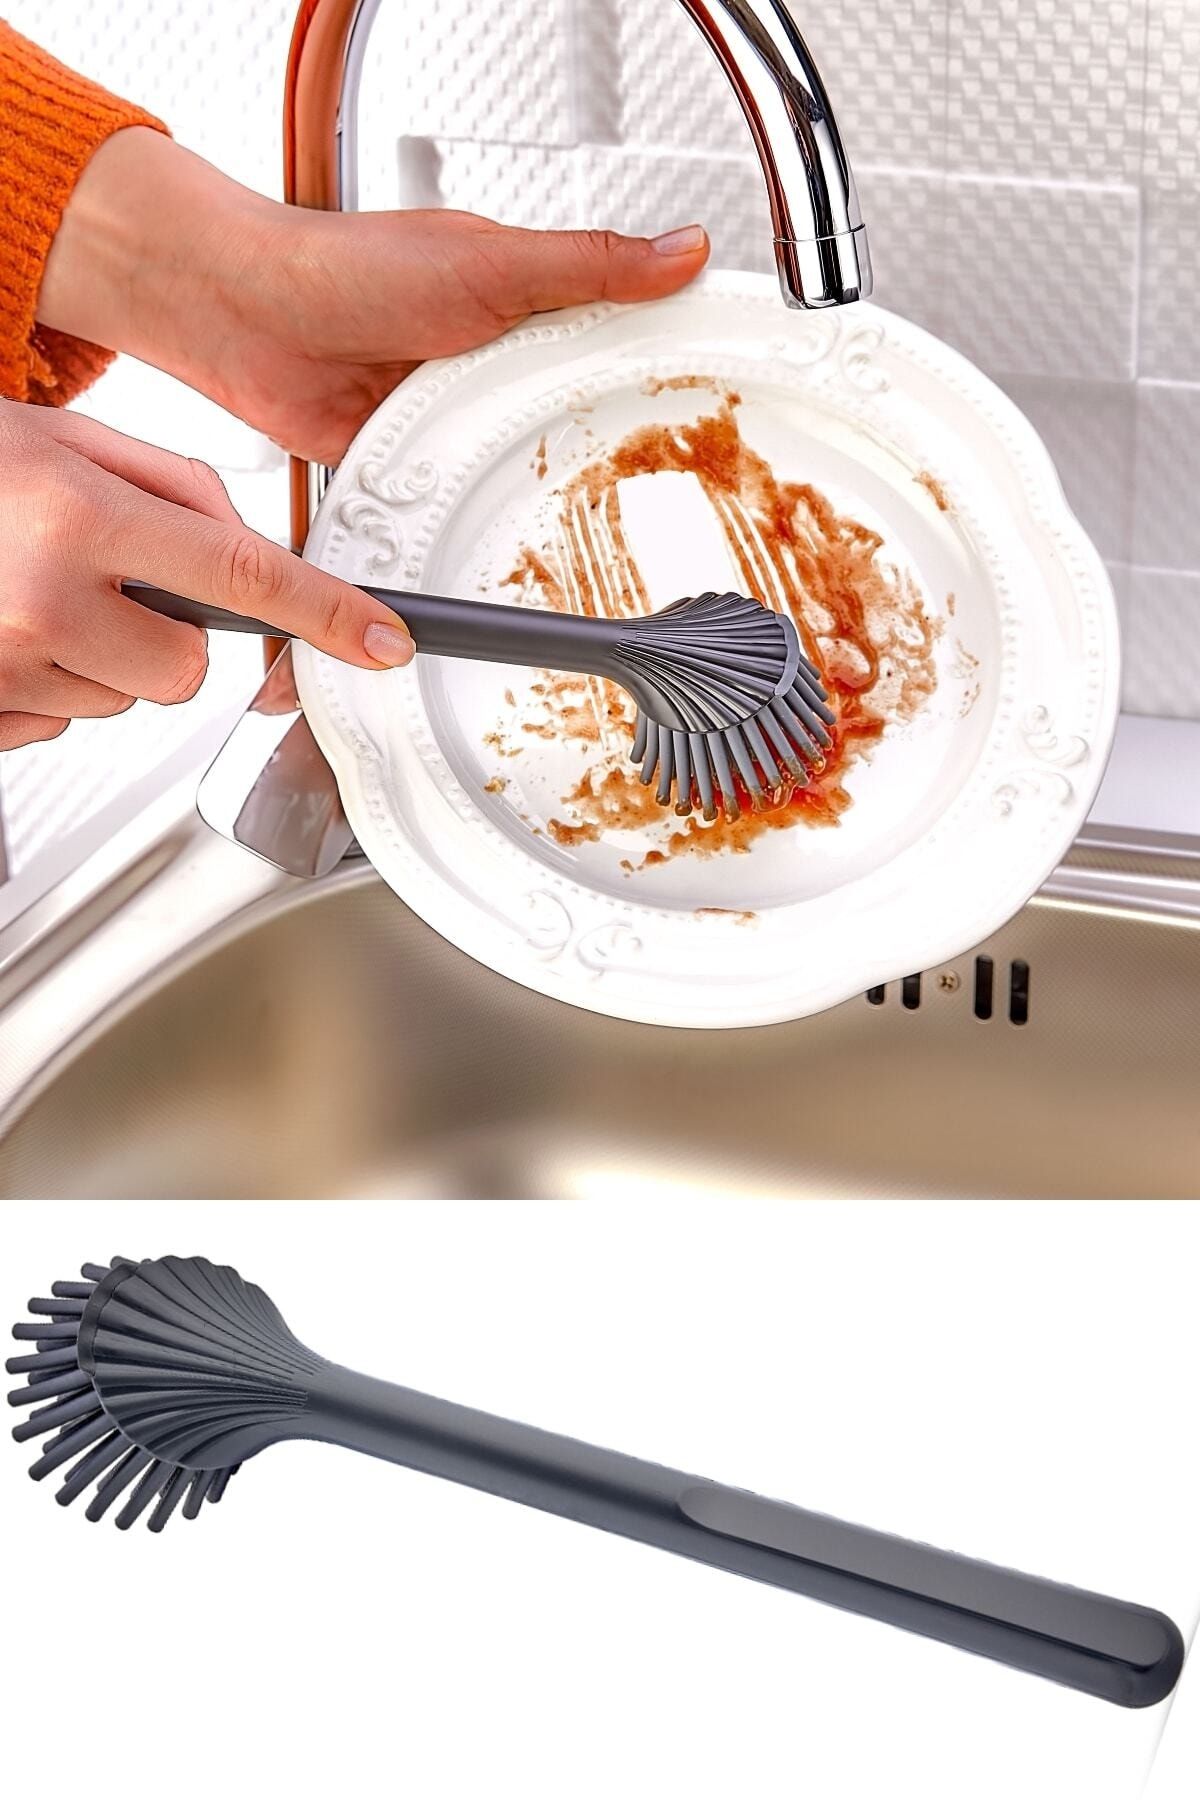 EARABUL Silikon Başlıklı Bulaşık Yıkama Ve Lavabo Temizleme Mutfak Tezgah Fırçası Gri Sap Gri Uç